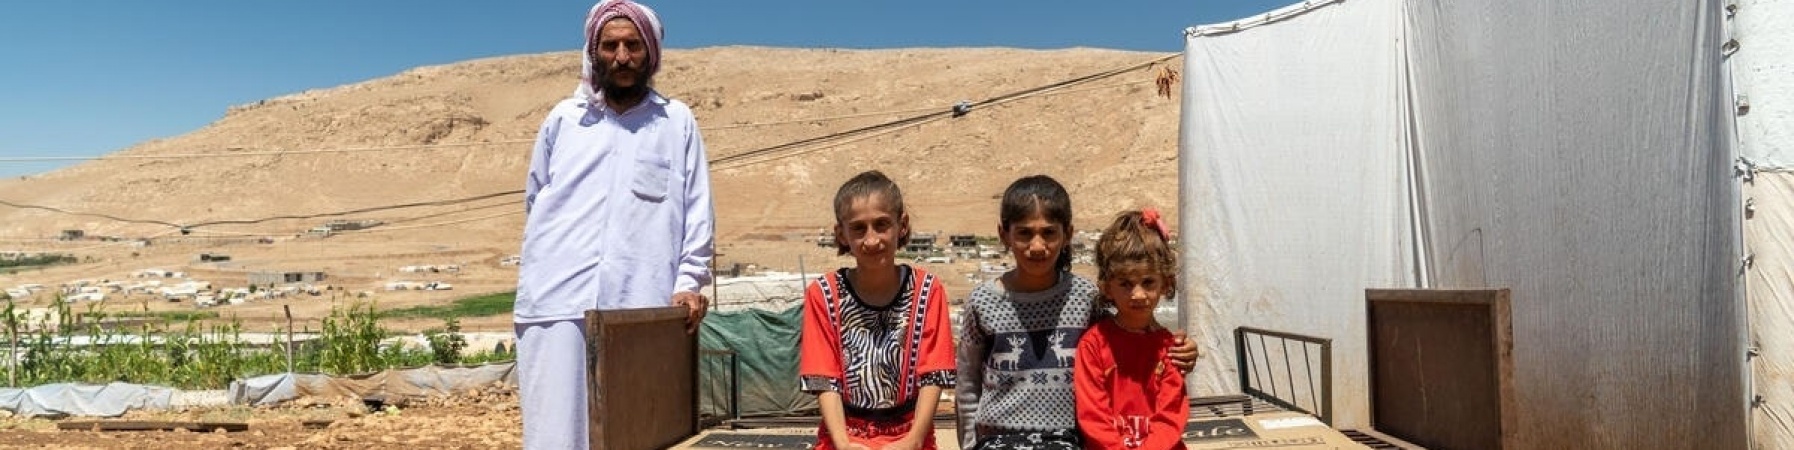 tre bambini yazidi seduti su una panca e in piedi alla loro destra il padre vestito di bianco 